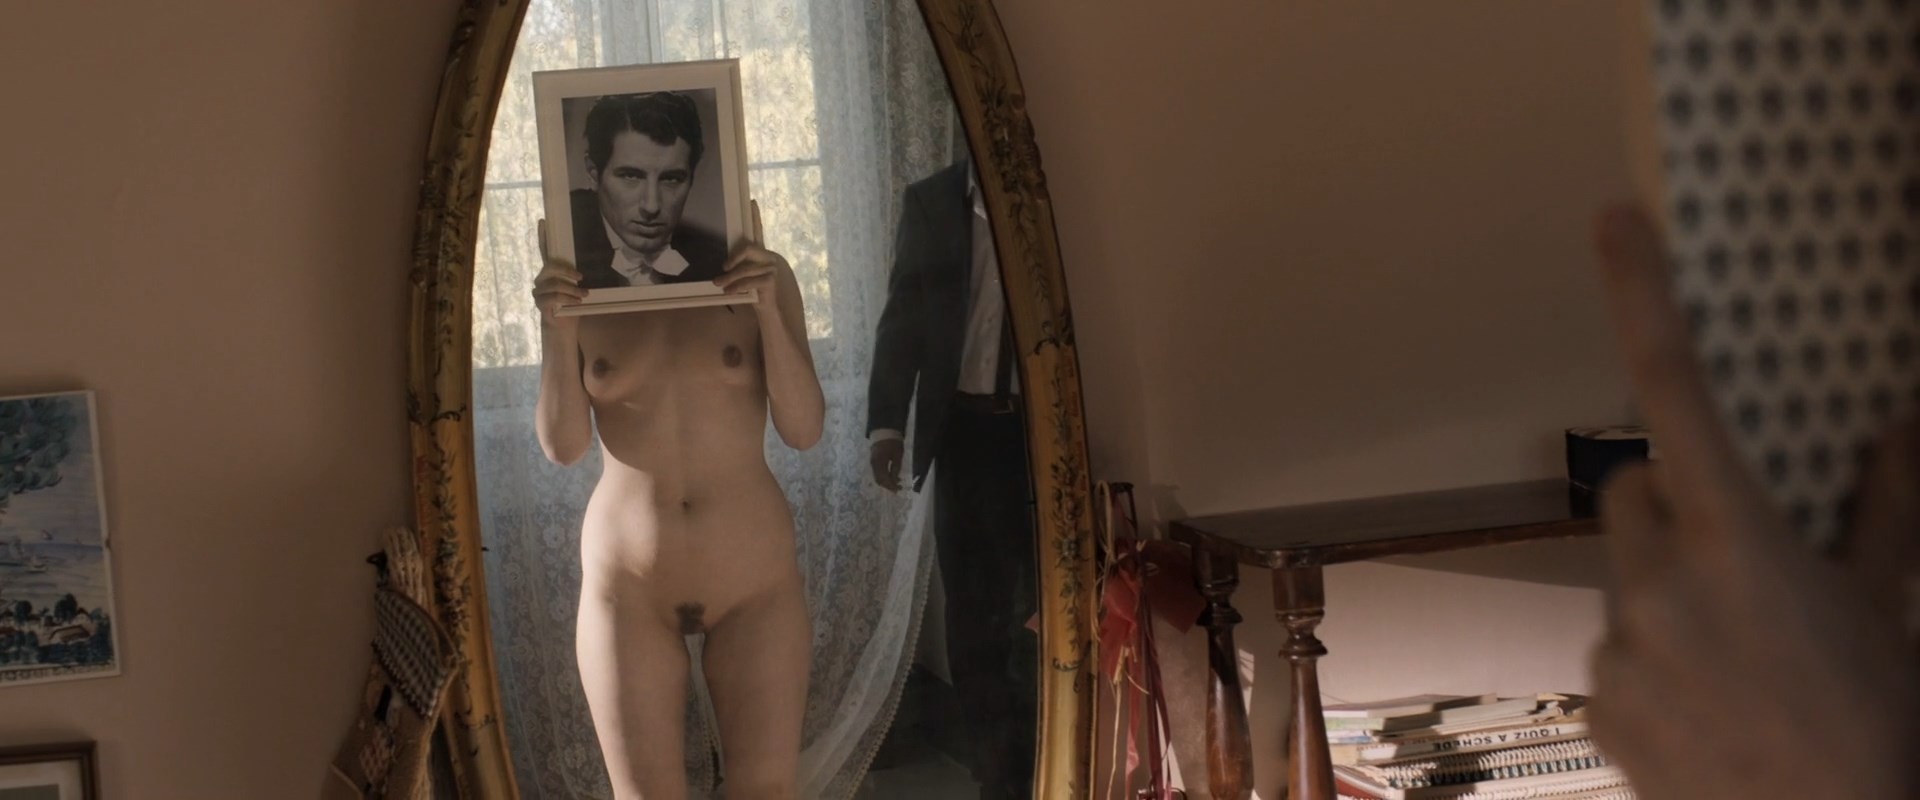 Sydney poitier nude - 🧡 Vanessa Ferlito Nude The Fappening - FappeningGram...